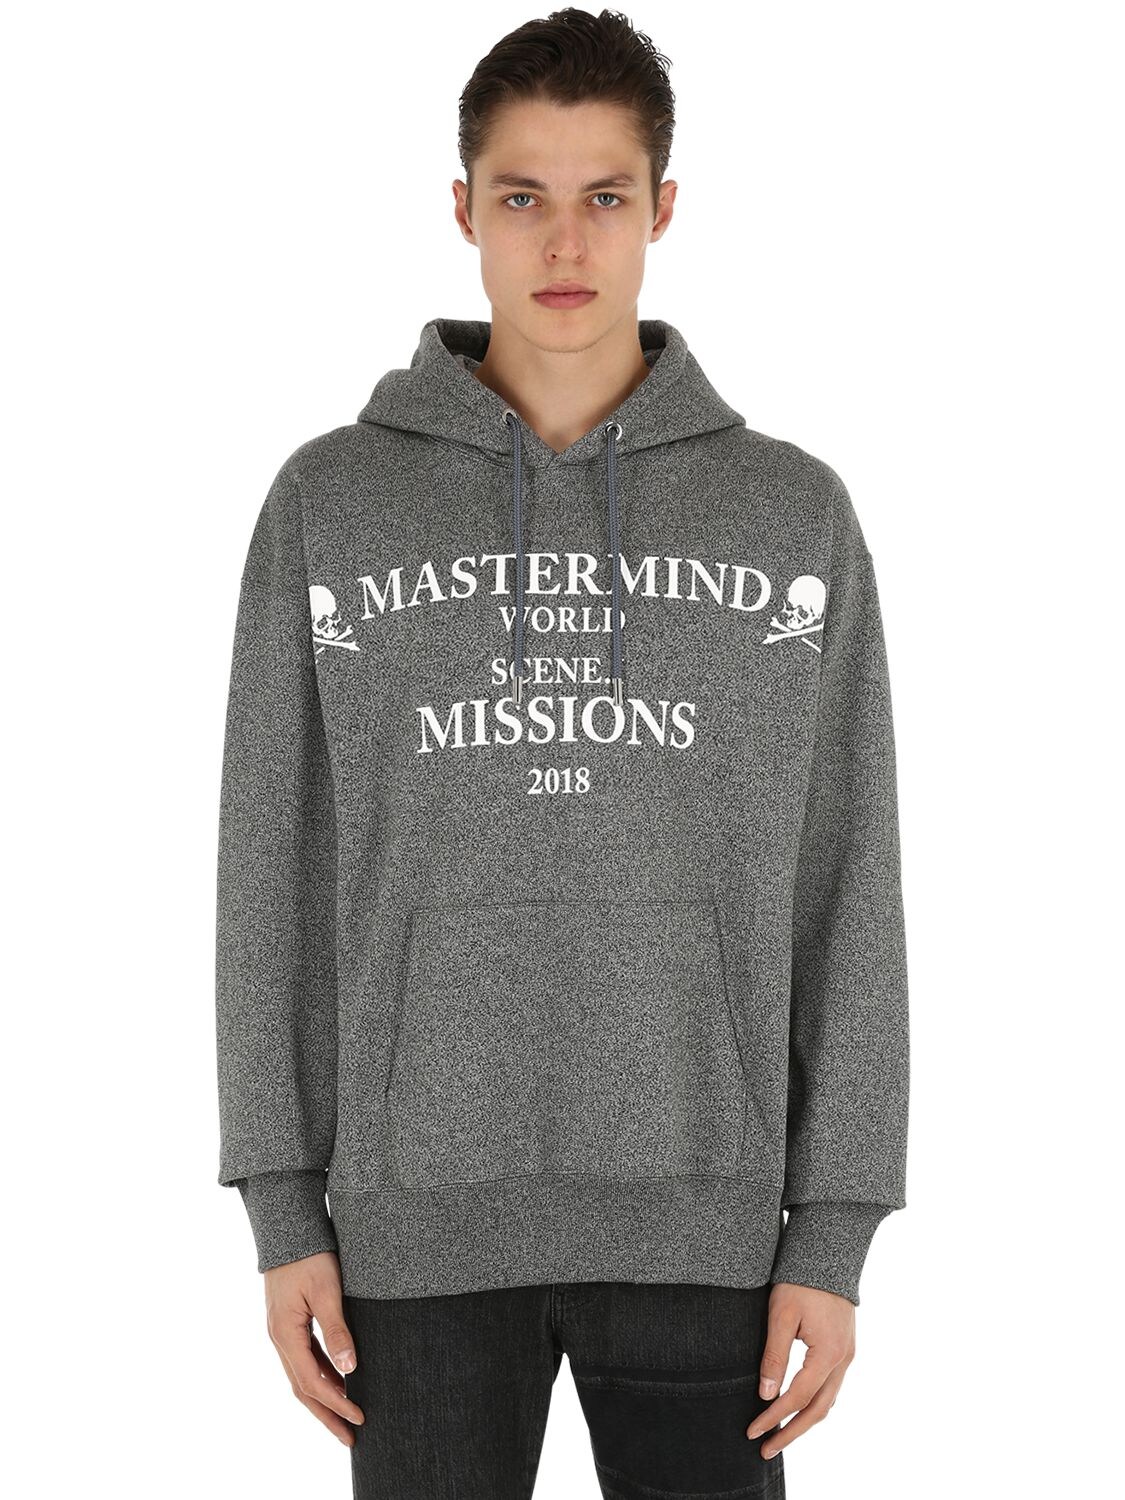 Mastermind Japan Missions Printed Sweatshirt Hoodie In Heather Grey